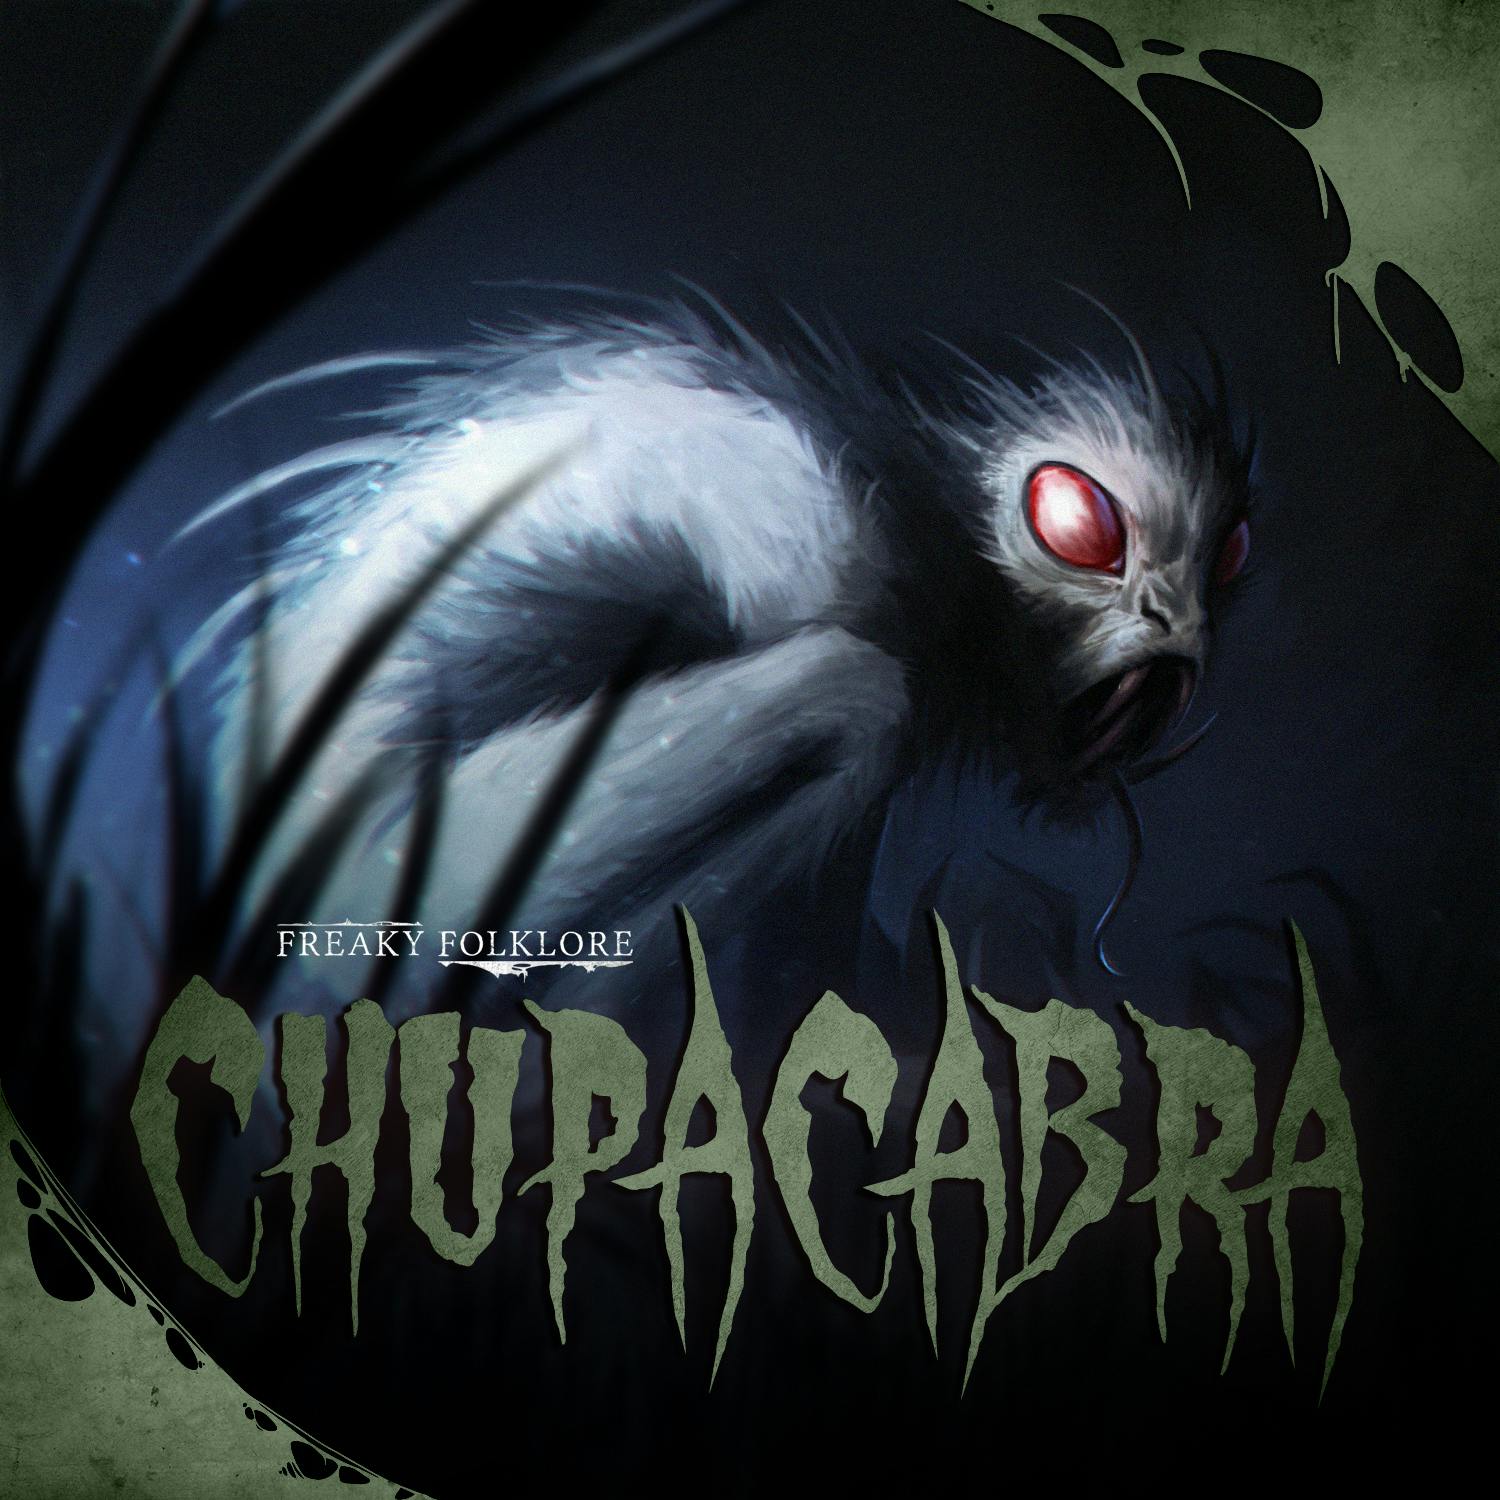 El Chupacabra - The Latin American Blood Sucker